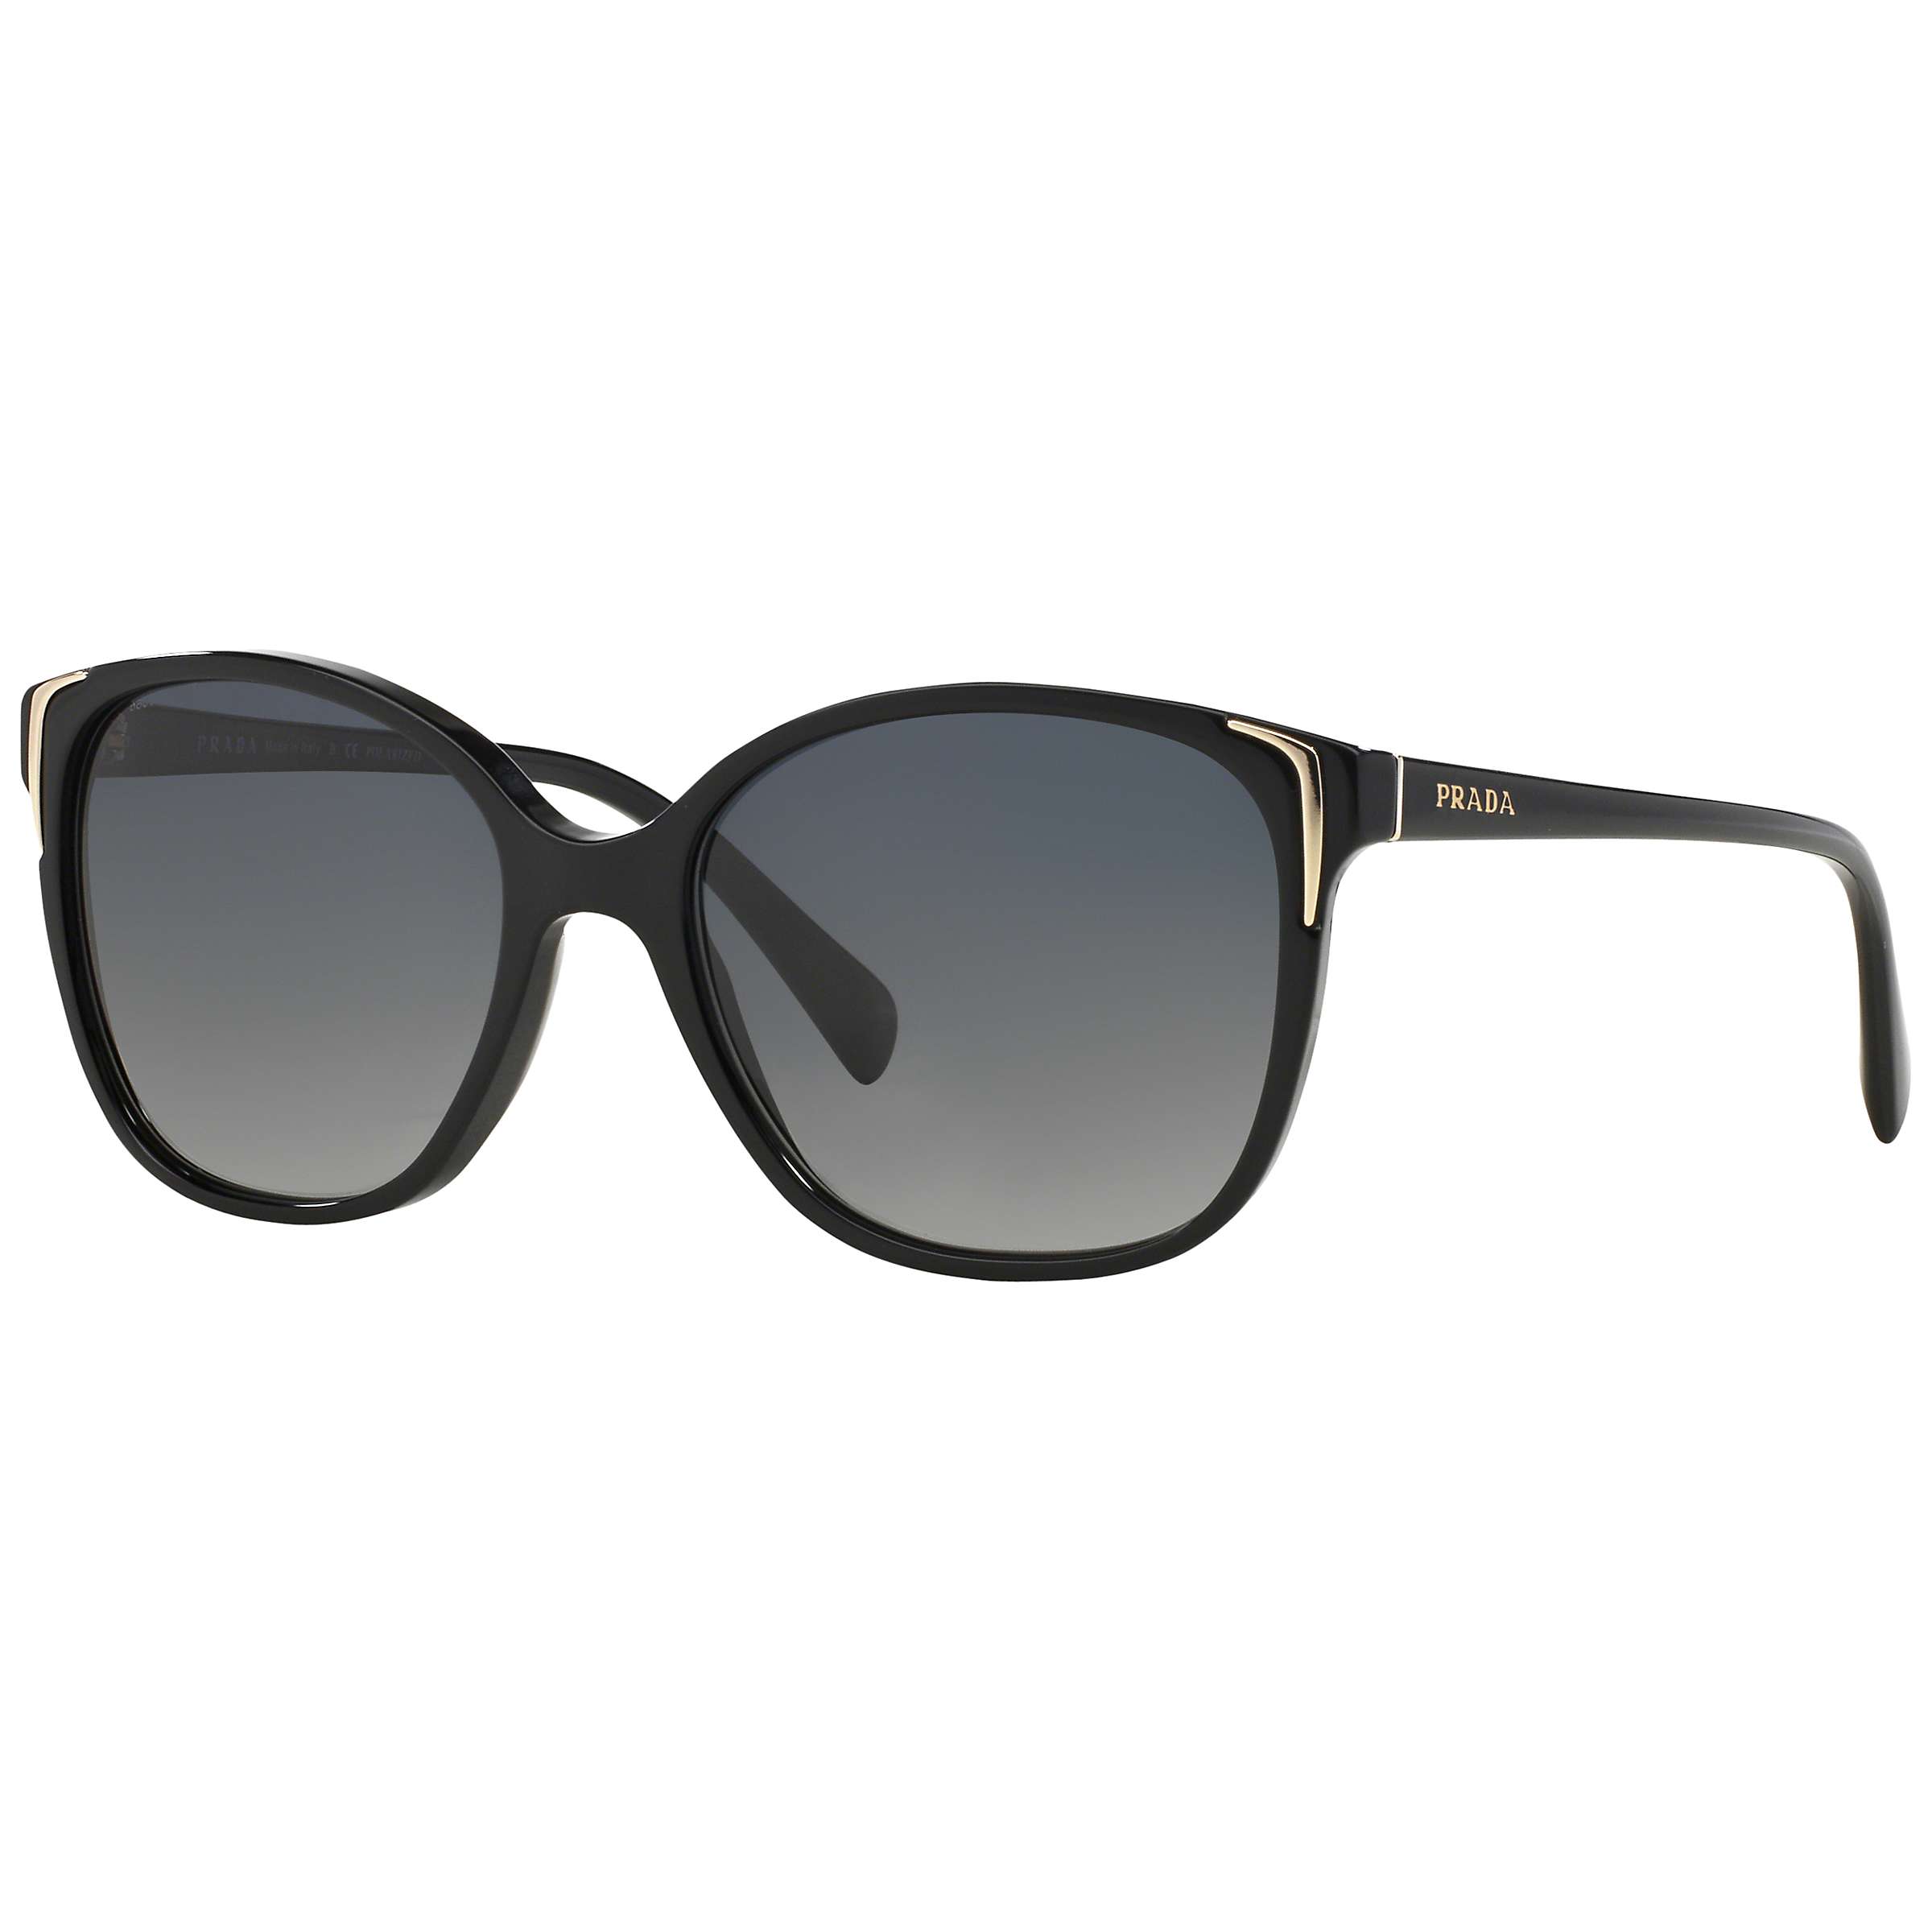 Buy Prada PR01OS Oval Sunglasses, Black Online at johnlewis.com